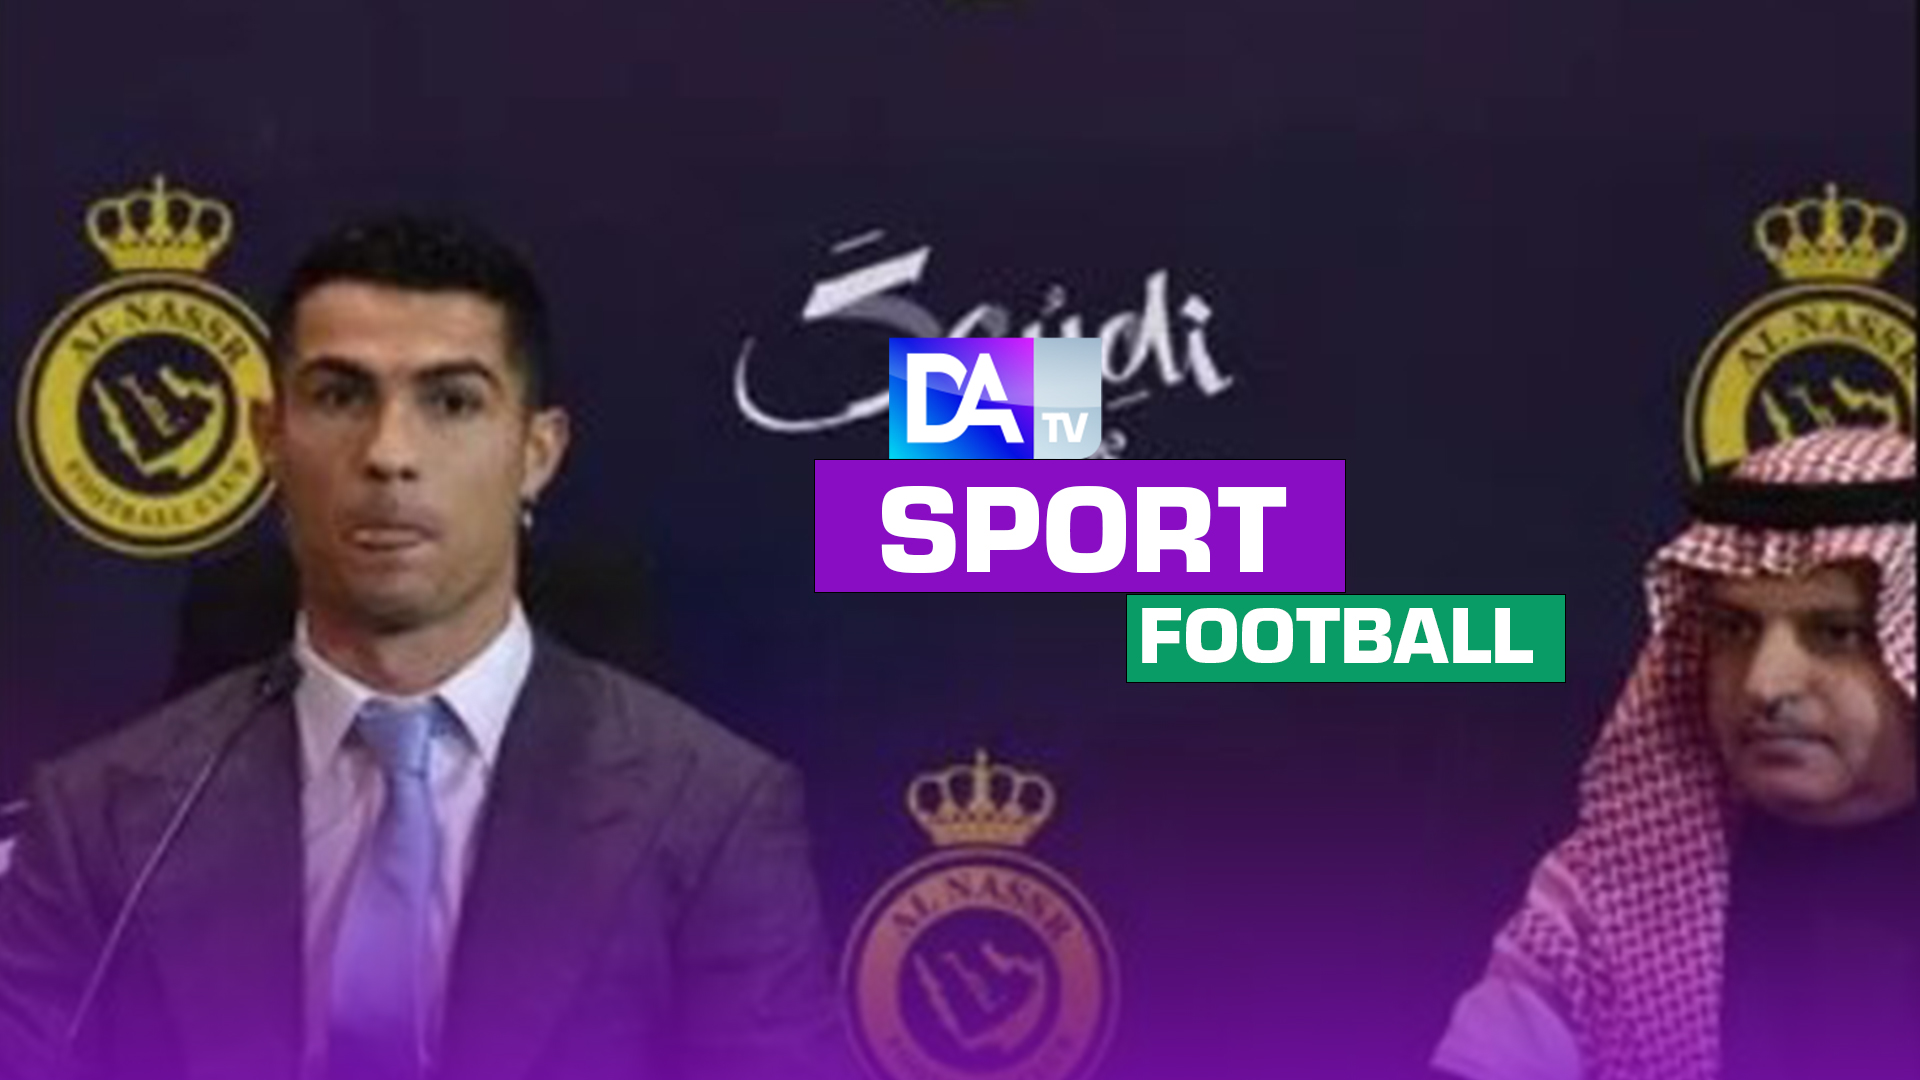 Foot: "En Europe mon travail est terminé", dit Ronaldo en arrivant au club saoudien Al-Nassr